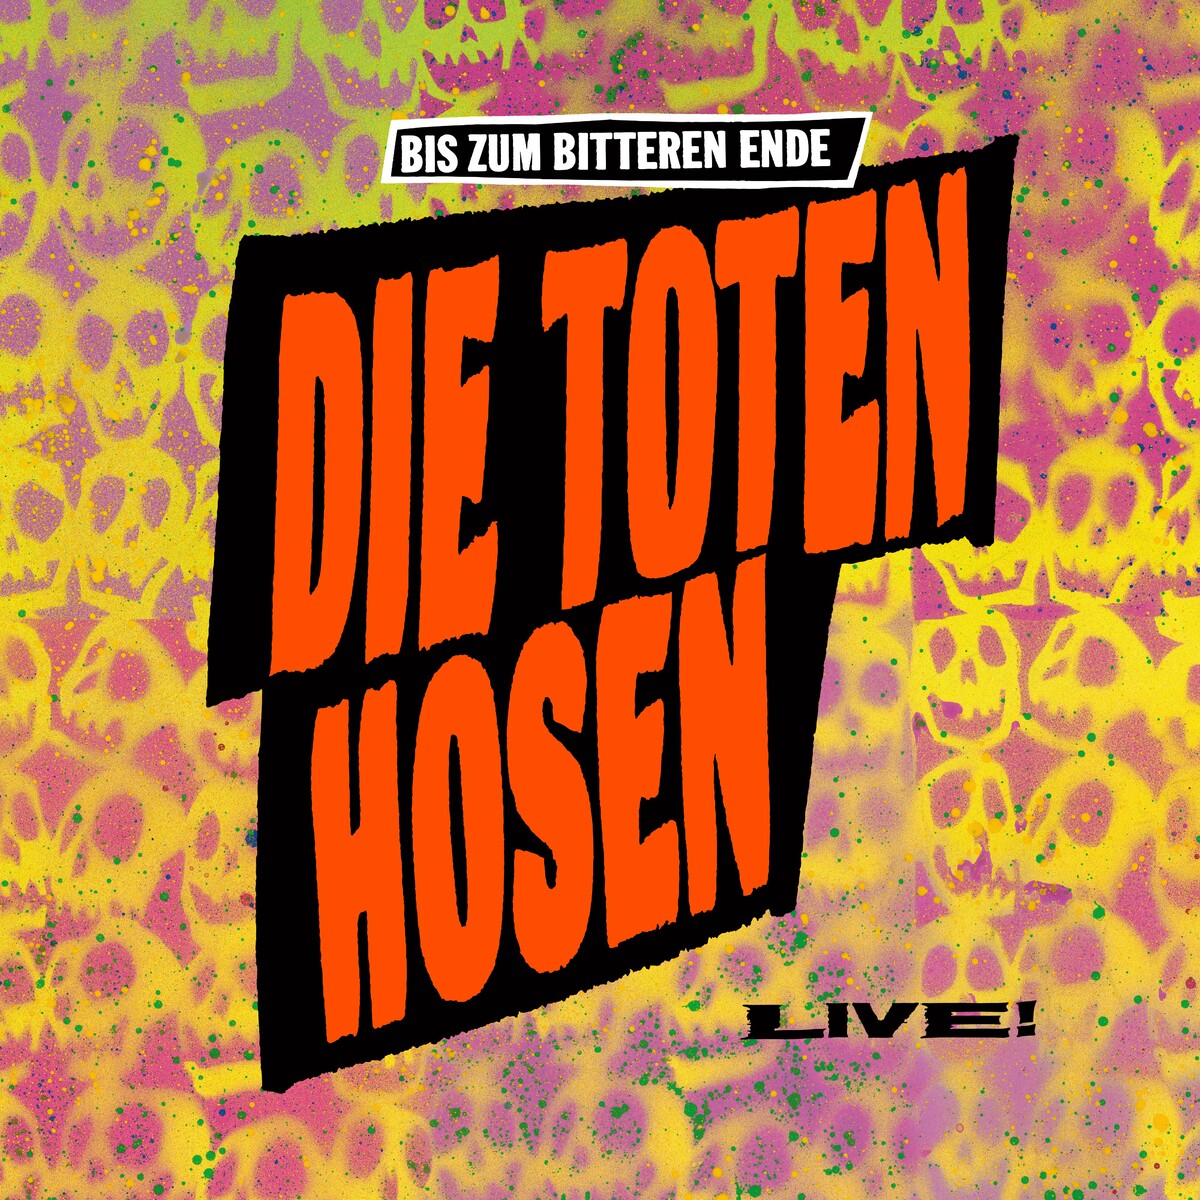 Die Toten Hosen - Bis zum bitteren Ende - LIVE! 1987-2022 plus Bonusalbum Wir sind bereit! (2022)